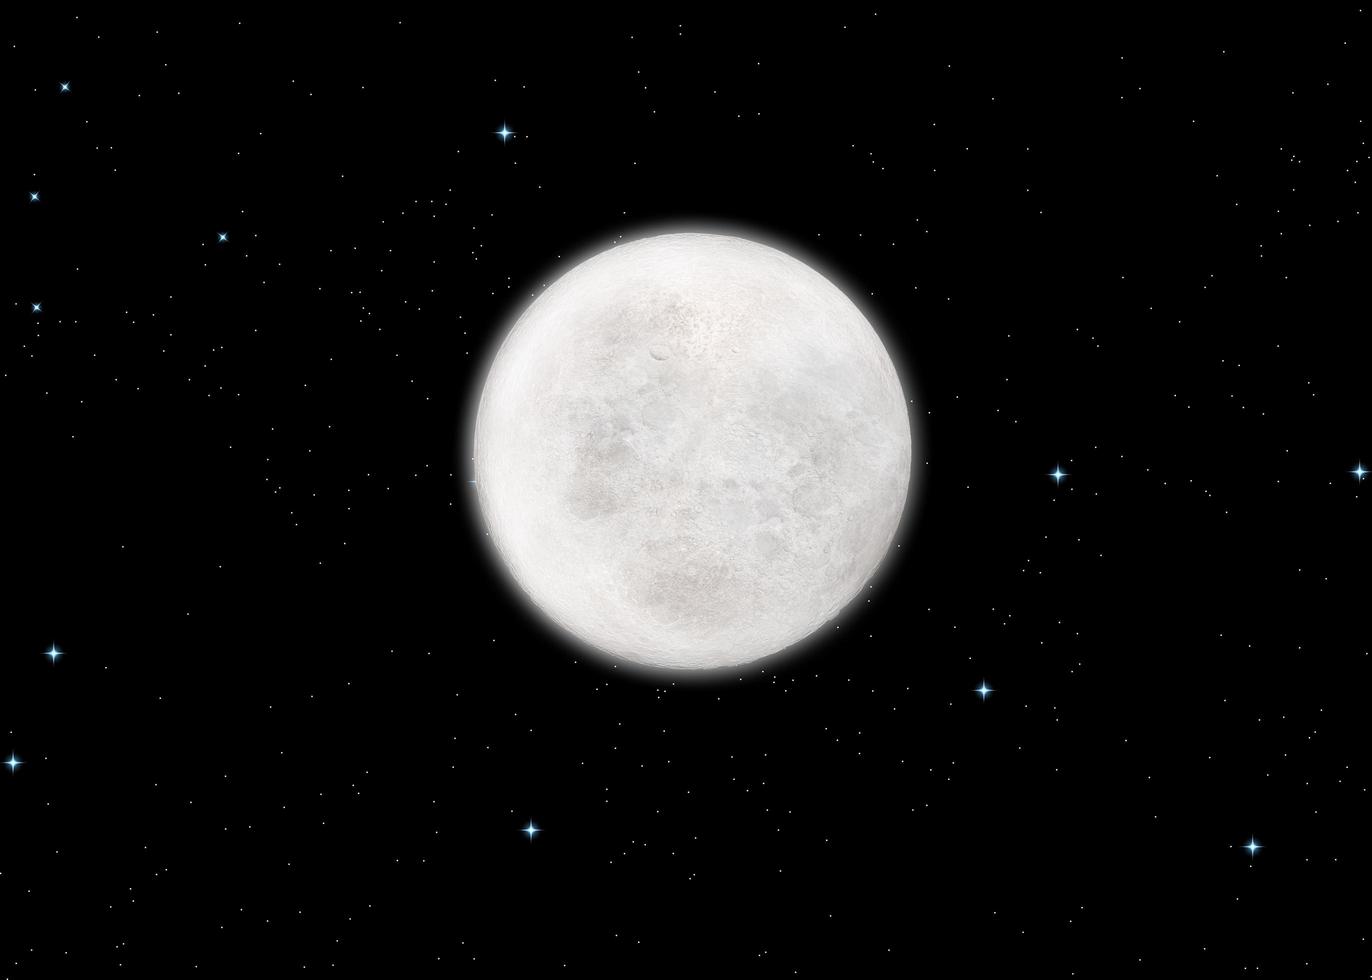 3d de alta resolução rendem a ilustração do espaço profundo escuro, estrelas e lua. melhor lua texturizada. astronomia científica, superfície lunar detalhada, fundo preto. foto